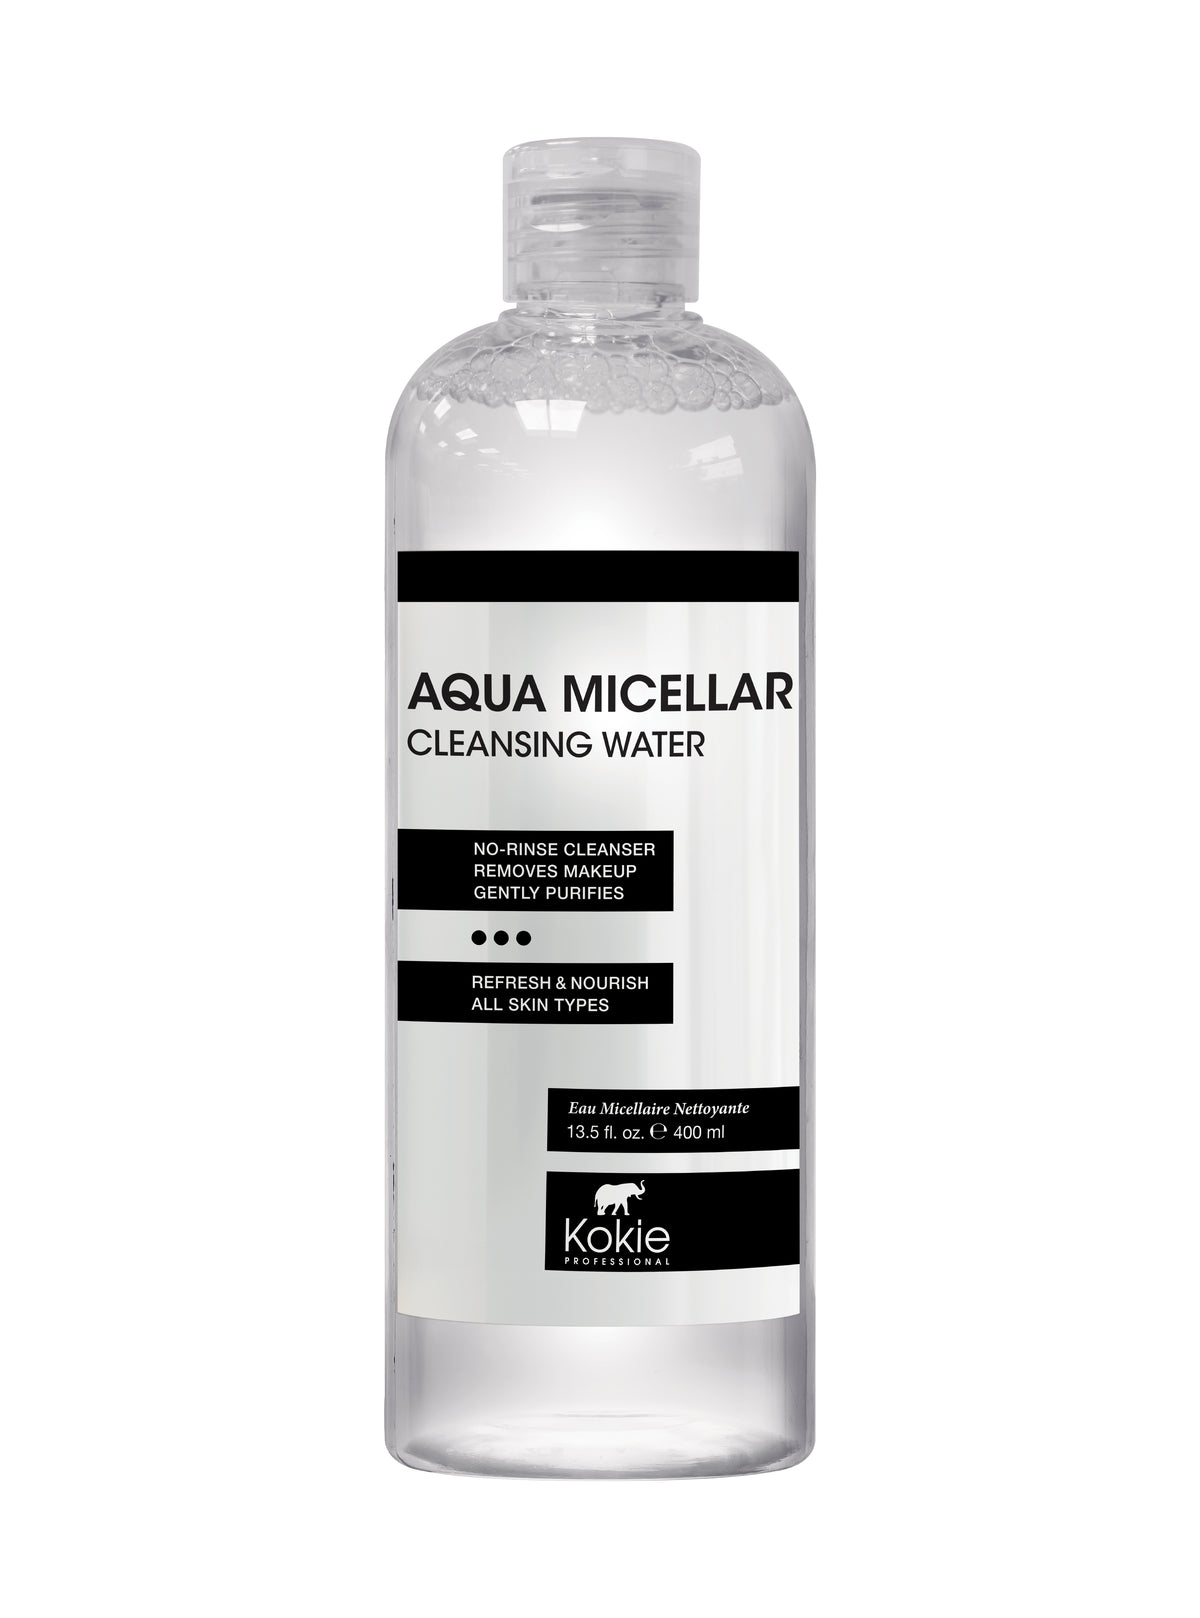 AQUA MICELLAR CLEANSING WATER